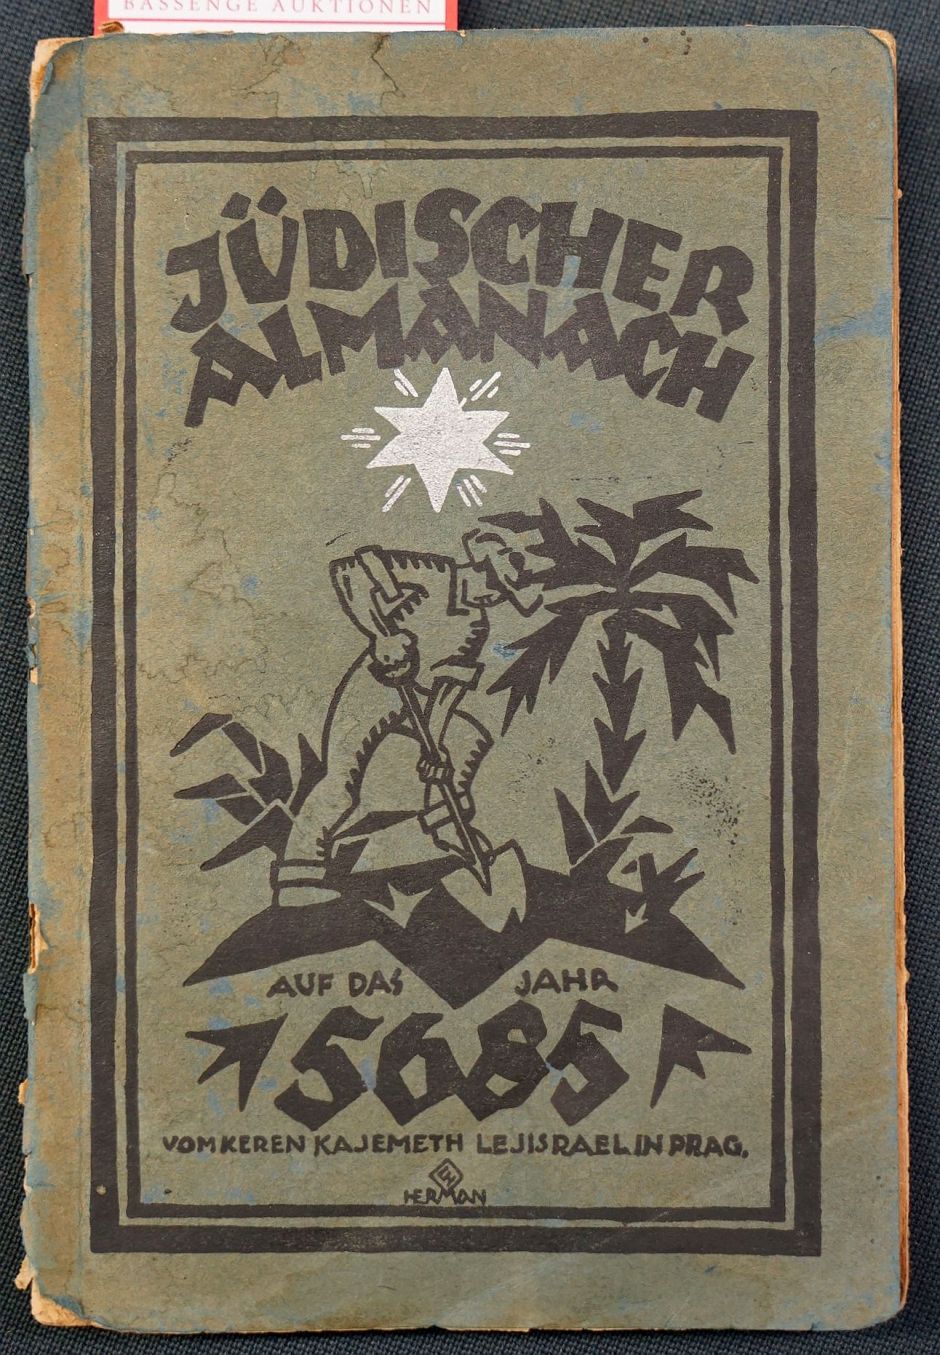 Lot 3228, Auction  115, Jüdischer Almanach, auf das Jahr 5685